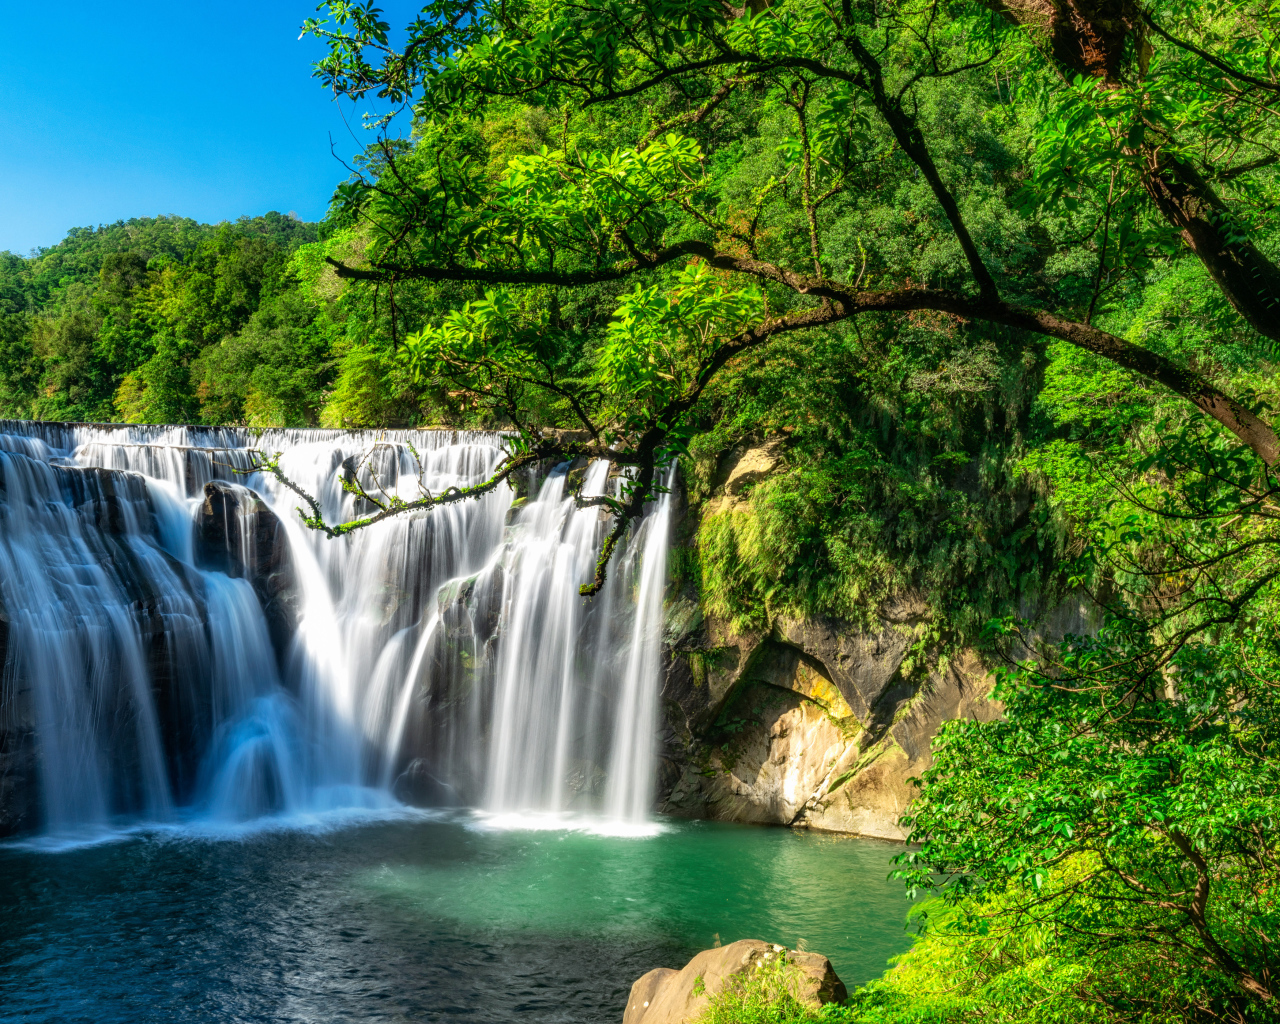 Быстрый водопад стекает со скалы в лесу с зелеными деревьями